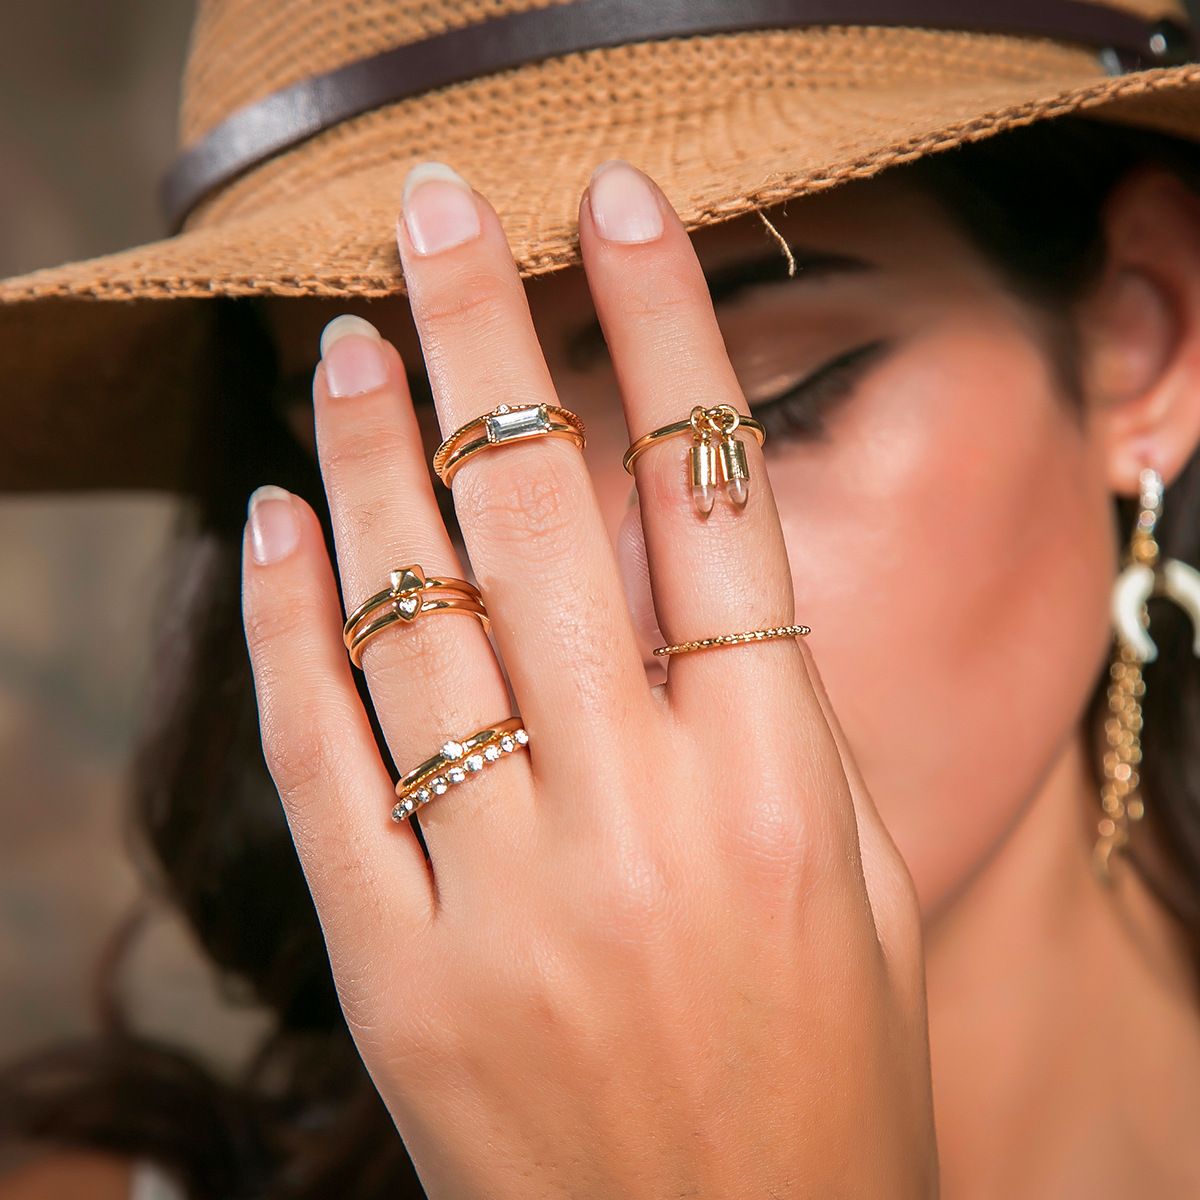 Надеты кольца золотые. Золотое кольцо на пальце. Кольцо на руке. Модные золотые кольца. Кольцо золотое на руке.